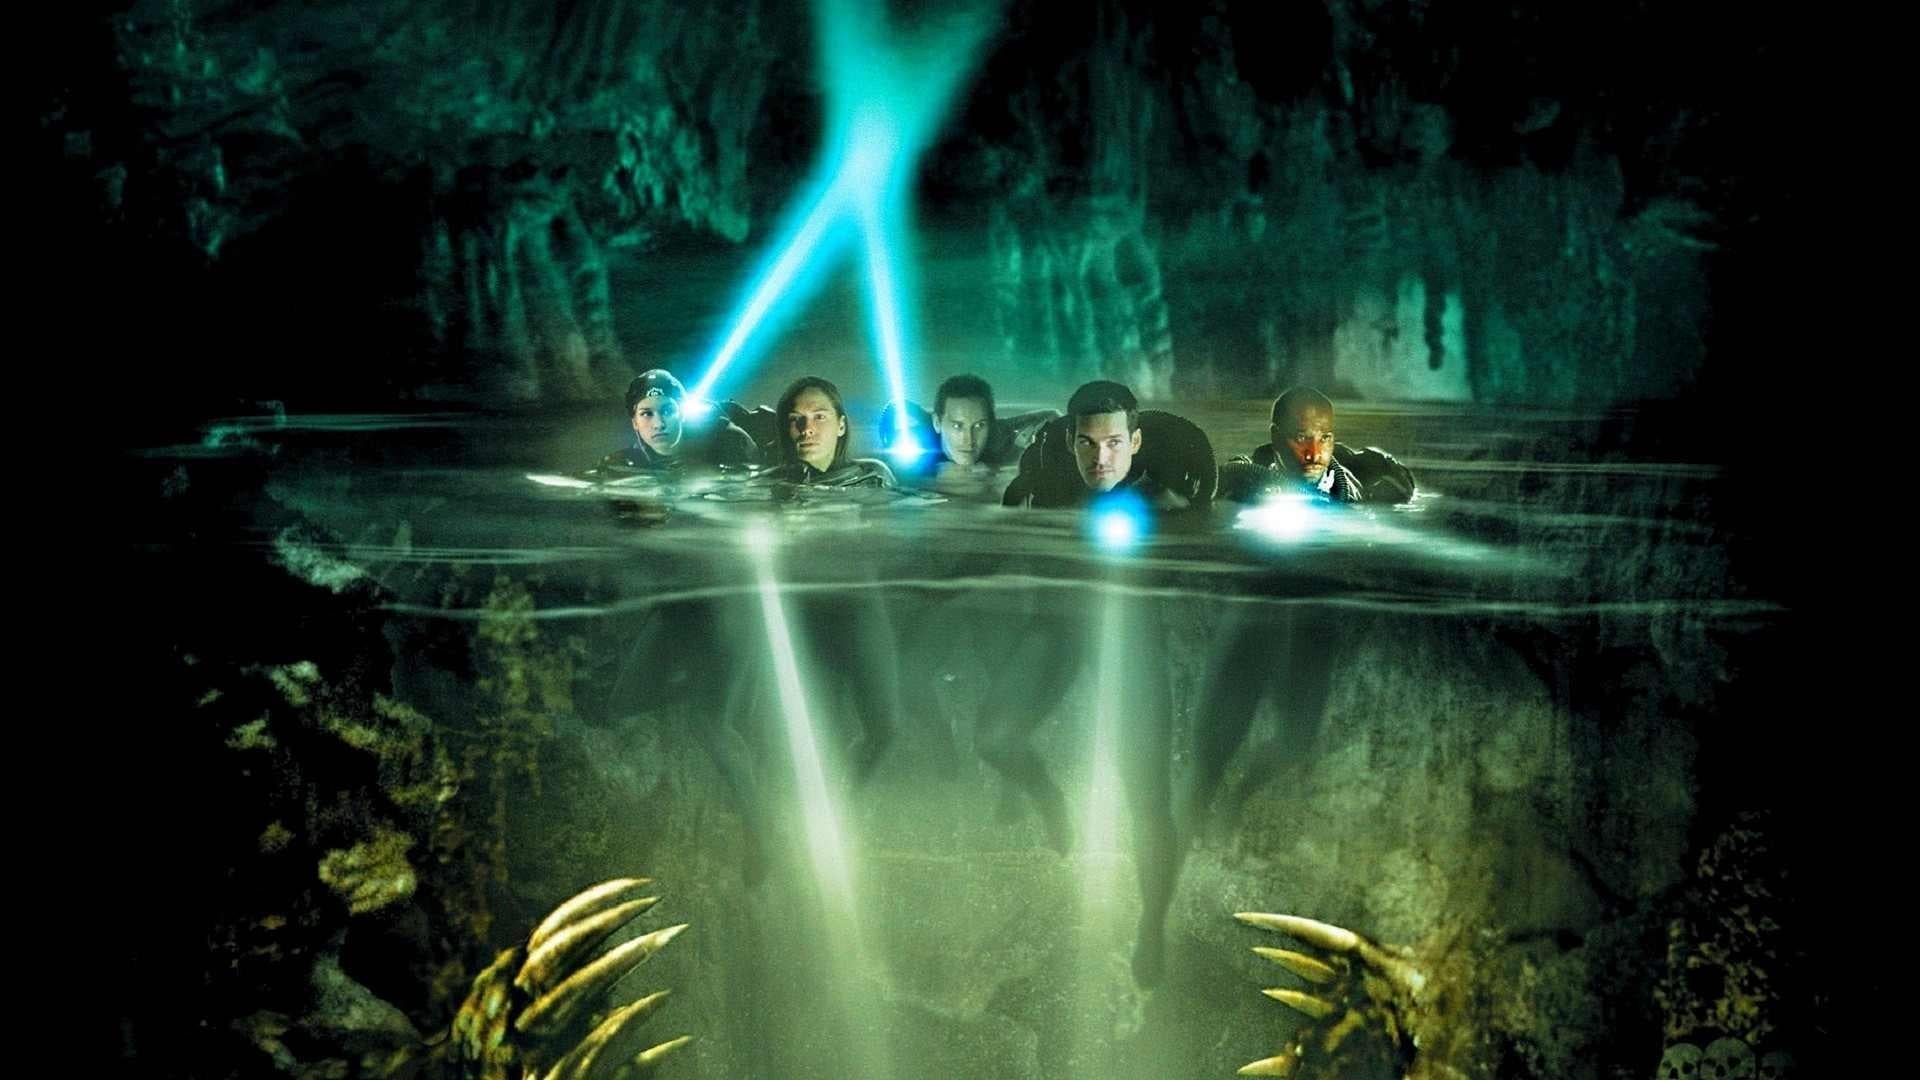 دانلود فیلم The Cave 2005